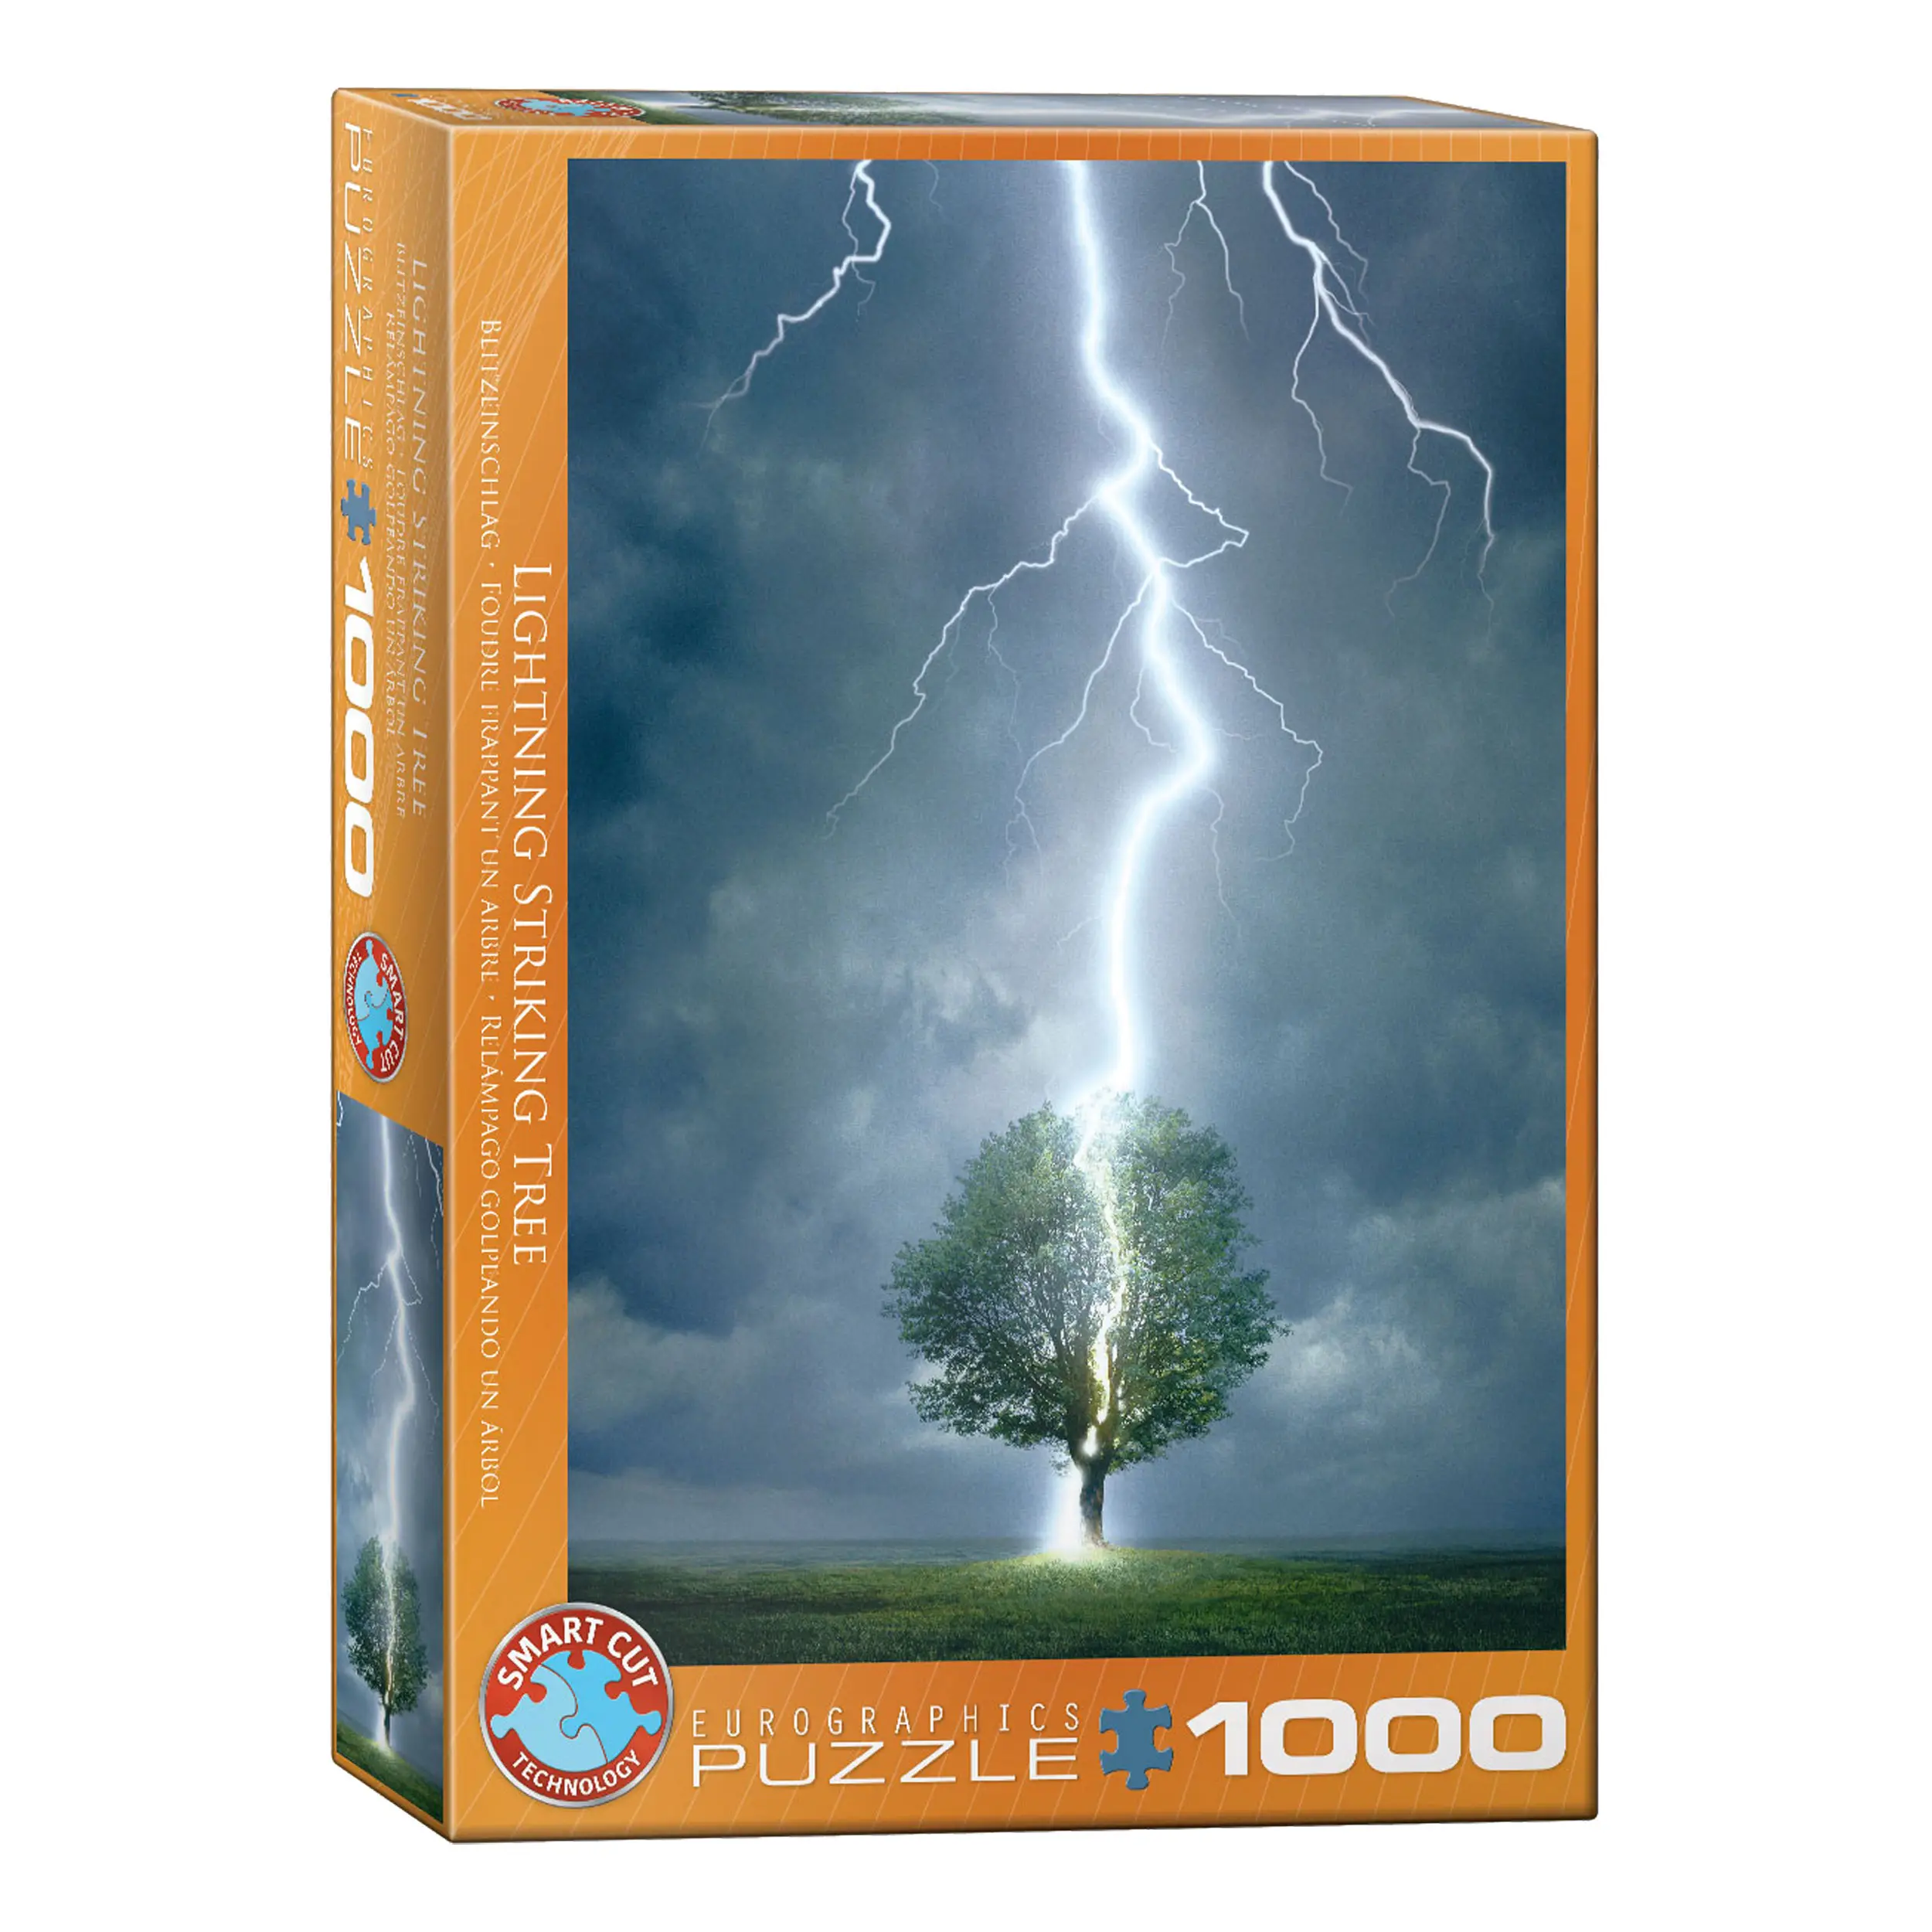 Puzzle Blitz schl盲gt in einen Baum